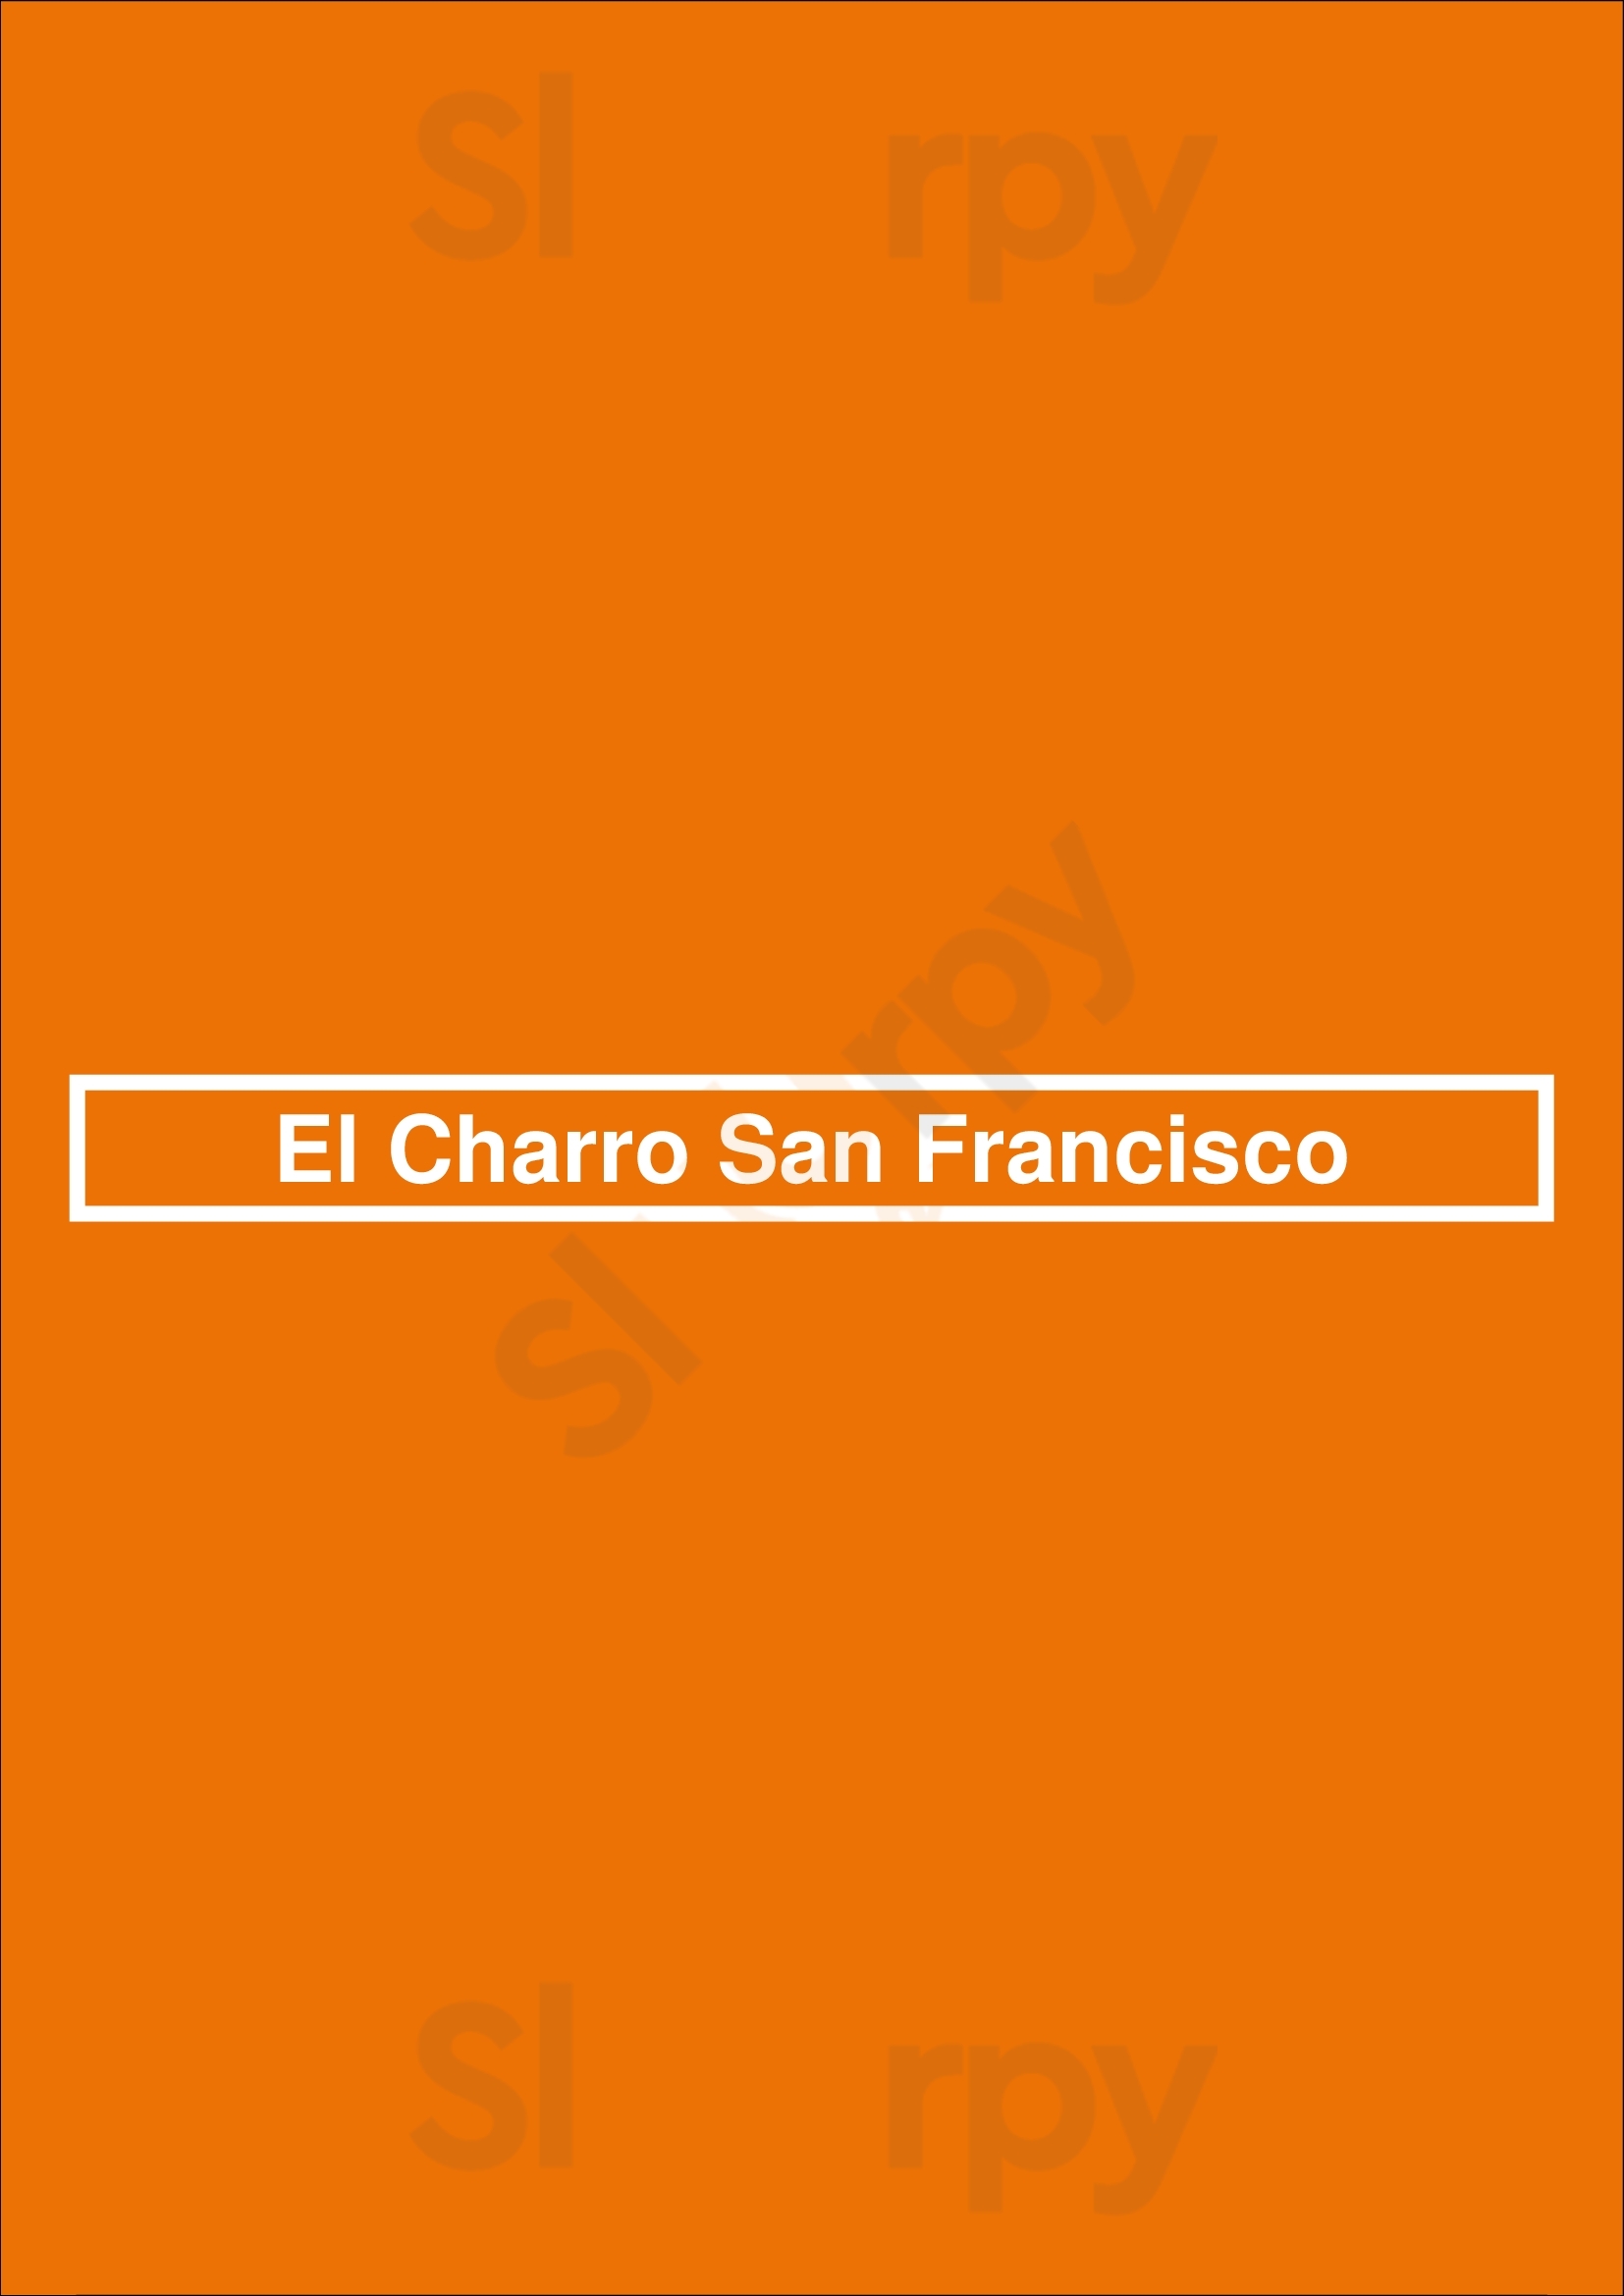 El Charro San Francisco Chicago Menu - 1